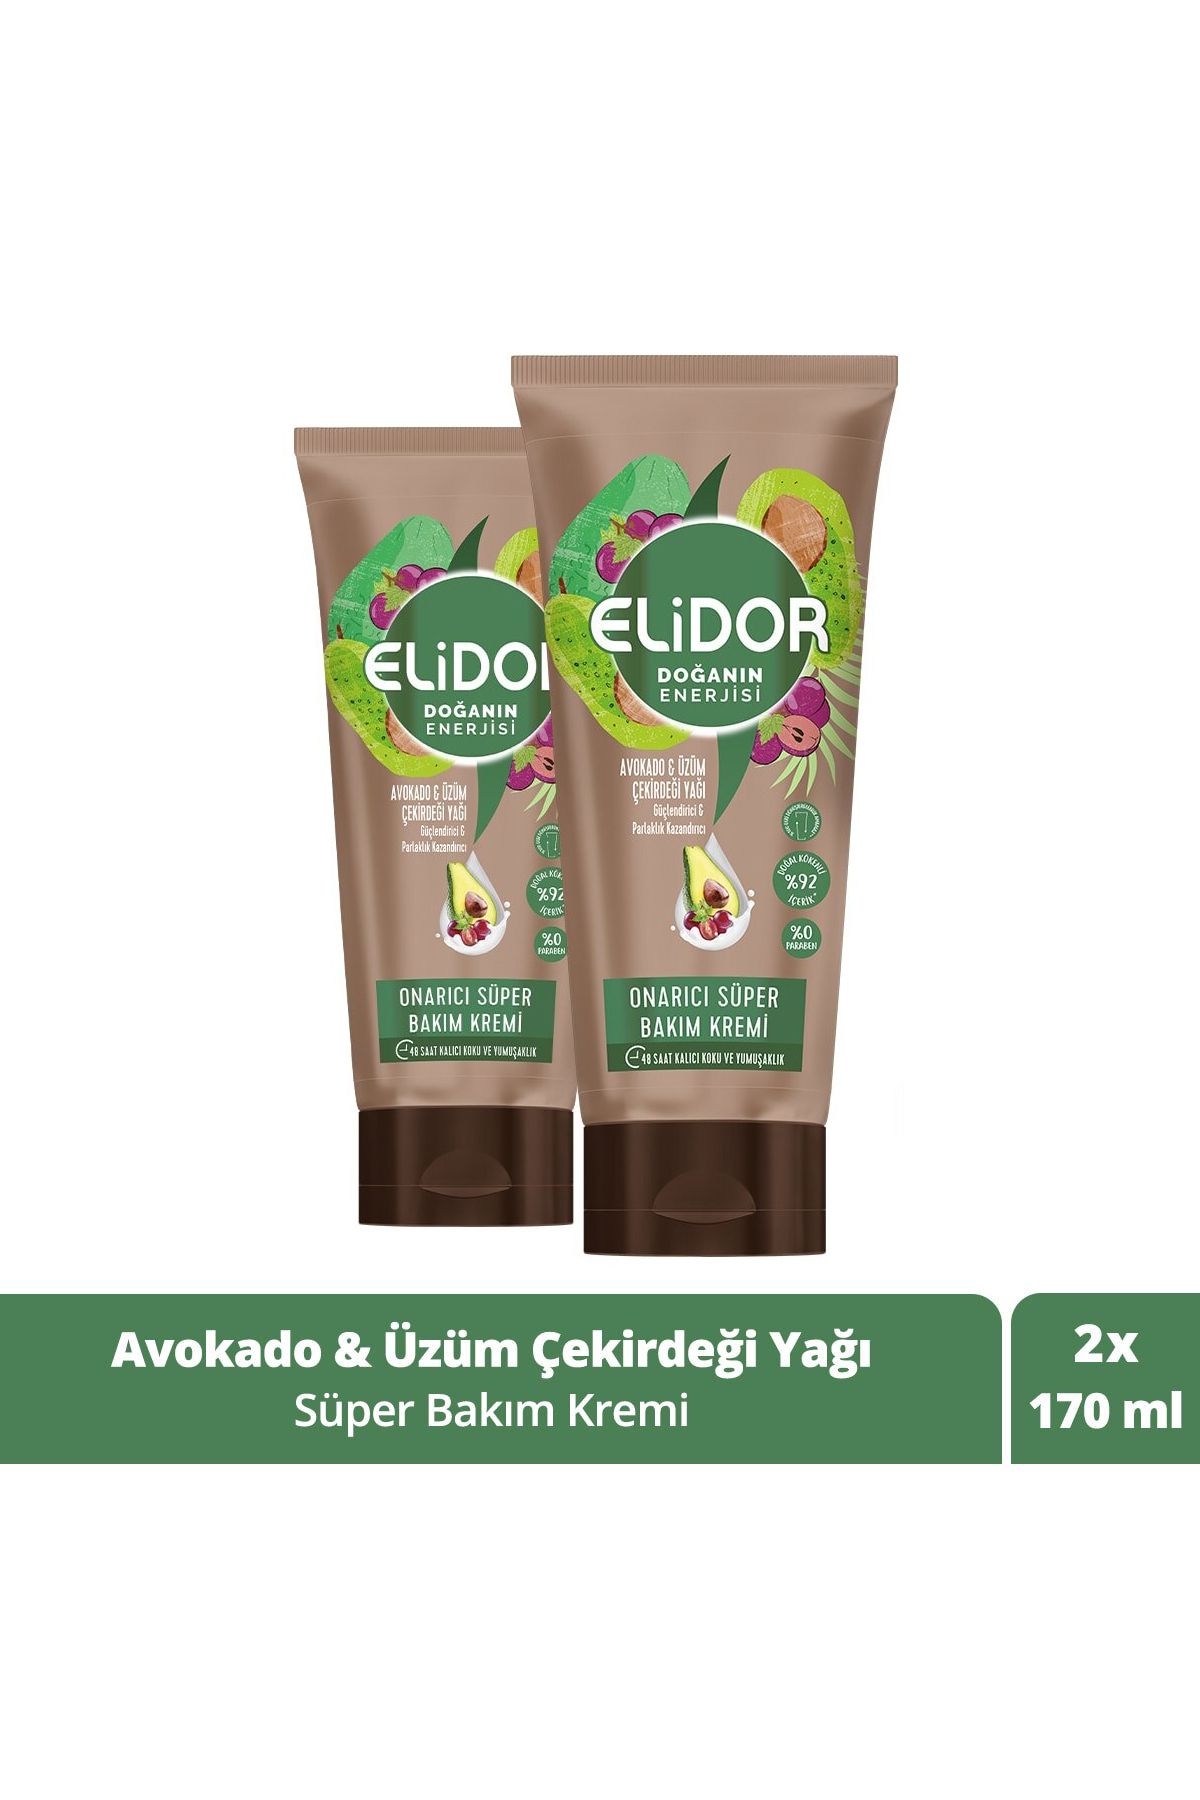 Elidor Doğanın Enerjisi Onarıcı Süper Saç Bakım Kremi Avokado Üzüm Çekirdeği Yağı 170 ml X2